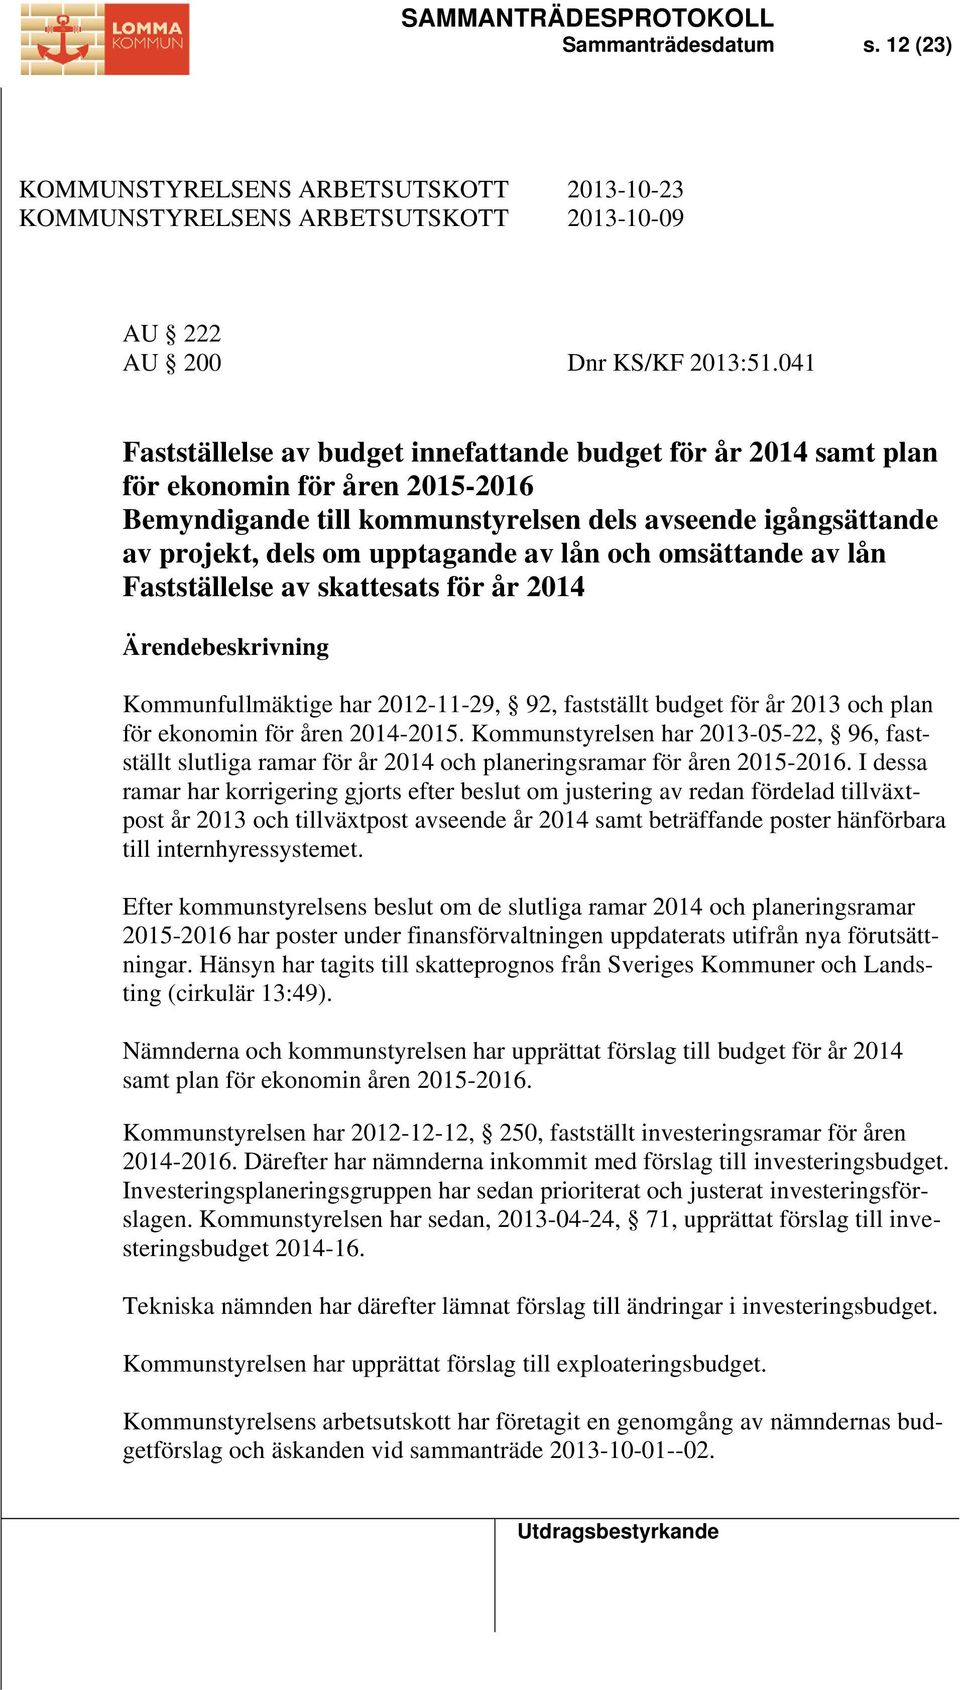 lån och omsättande av lån Fastställelse av skattesats för år 2014 Ärendebeskrivning Kommunfullmäktige har 2012-11-29, 92, fastställt budget för år 2013 och plan för ekonomin för åren 2014-2015.